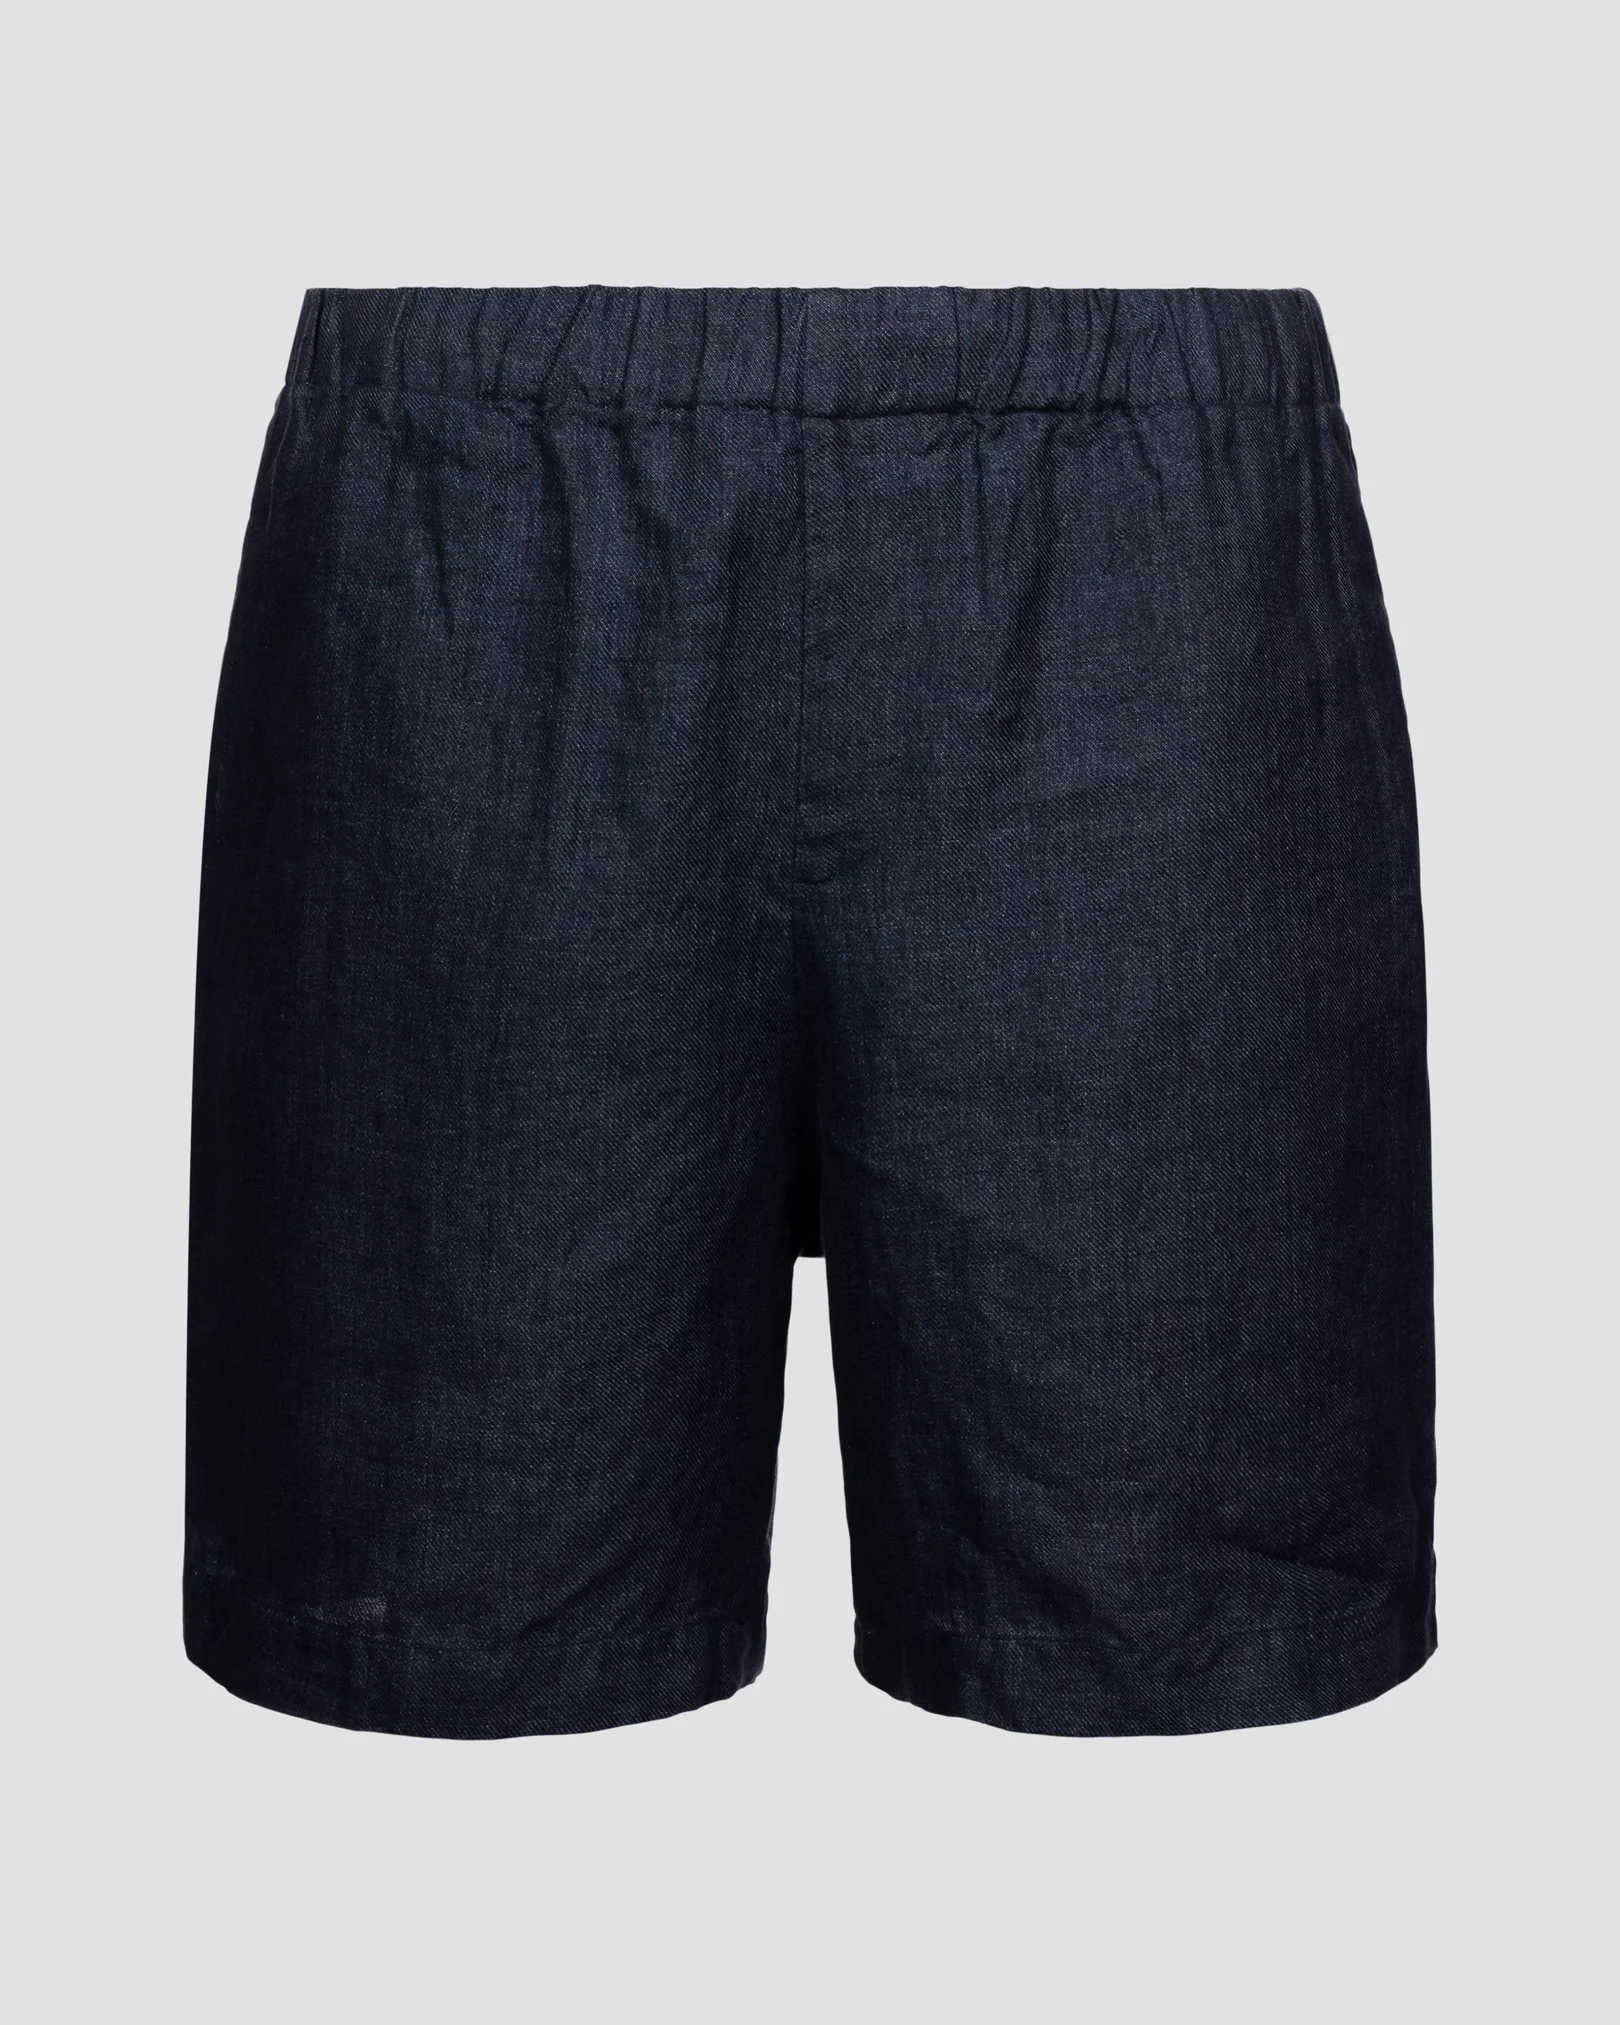 Marinblå shorts i kraftigt linne